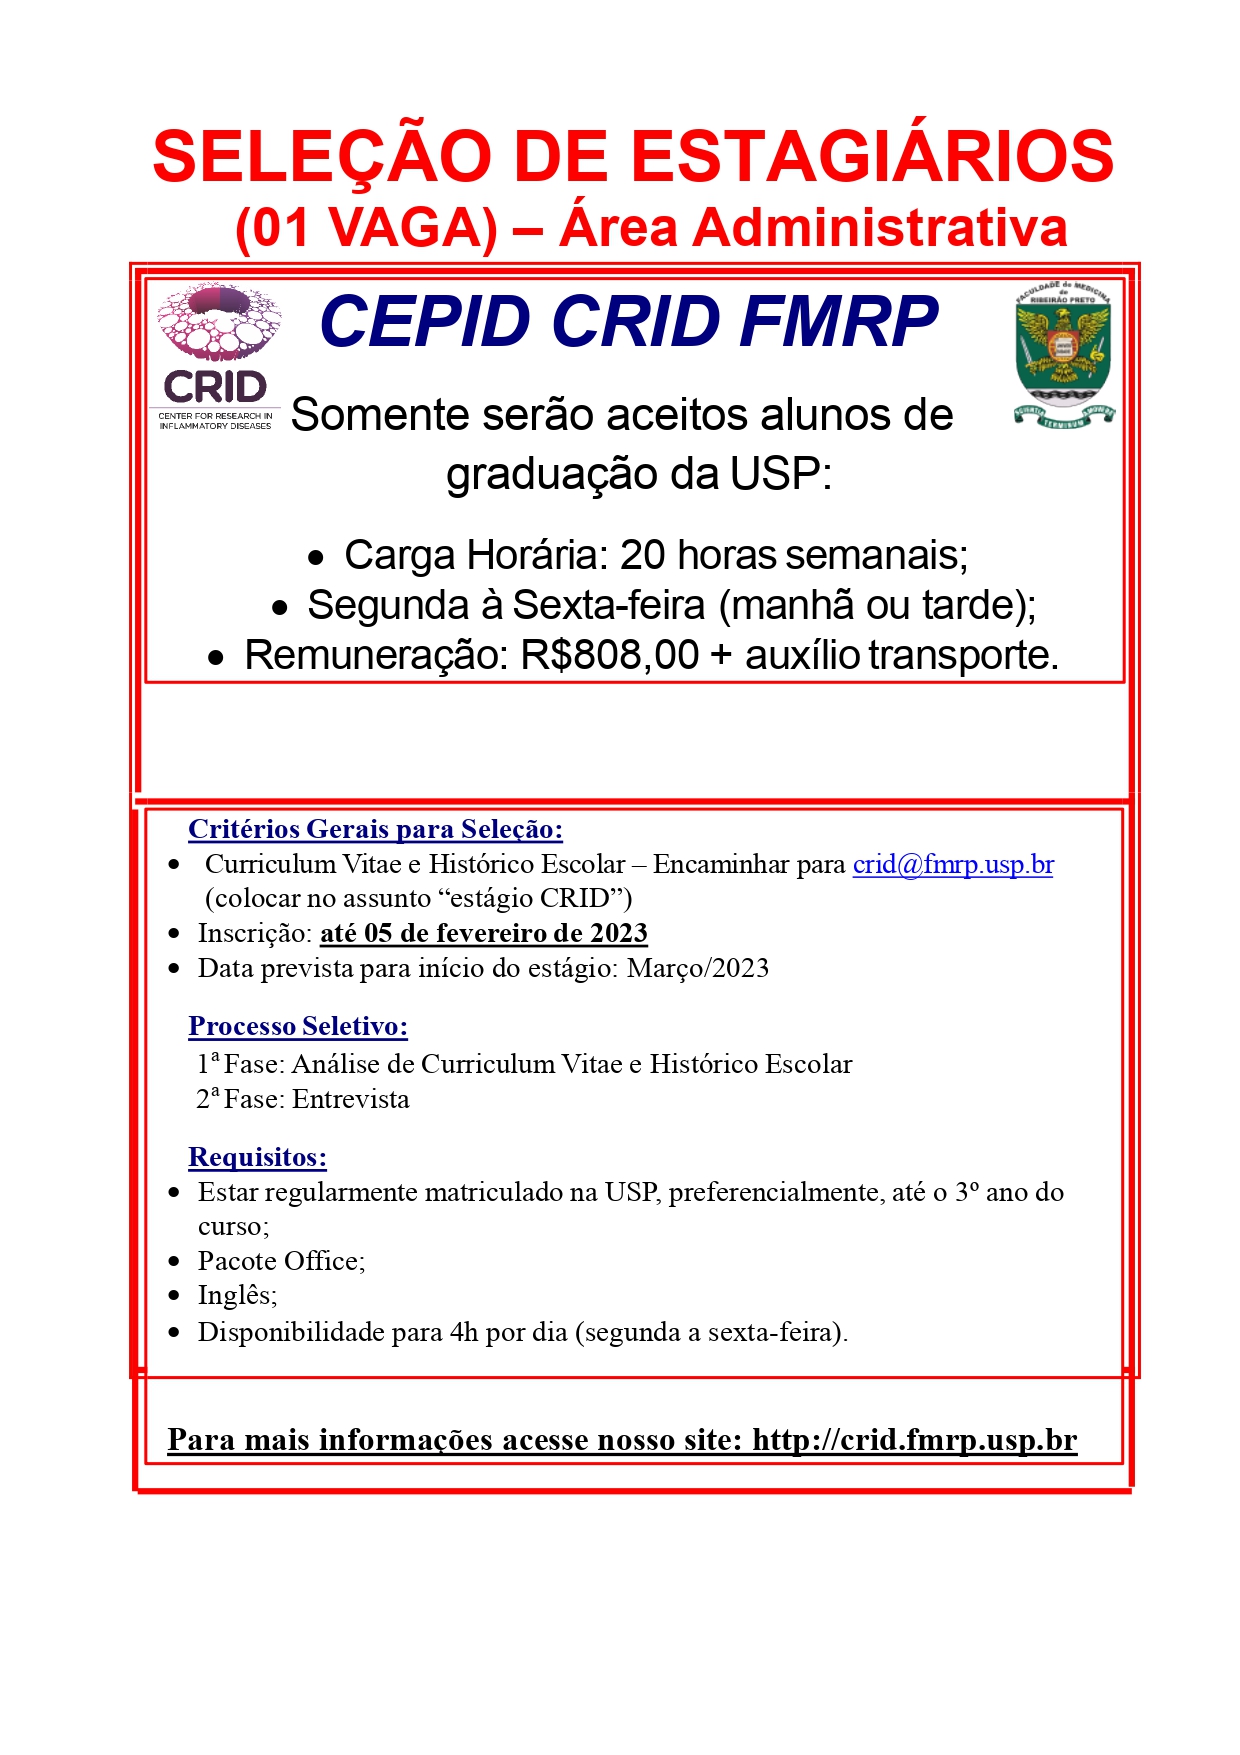 CEPID-CRID_-_FMRP-USP_page-0001.jpg